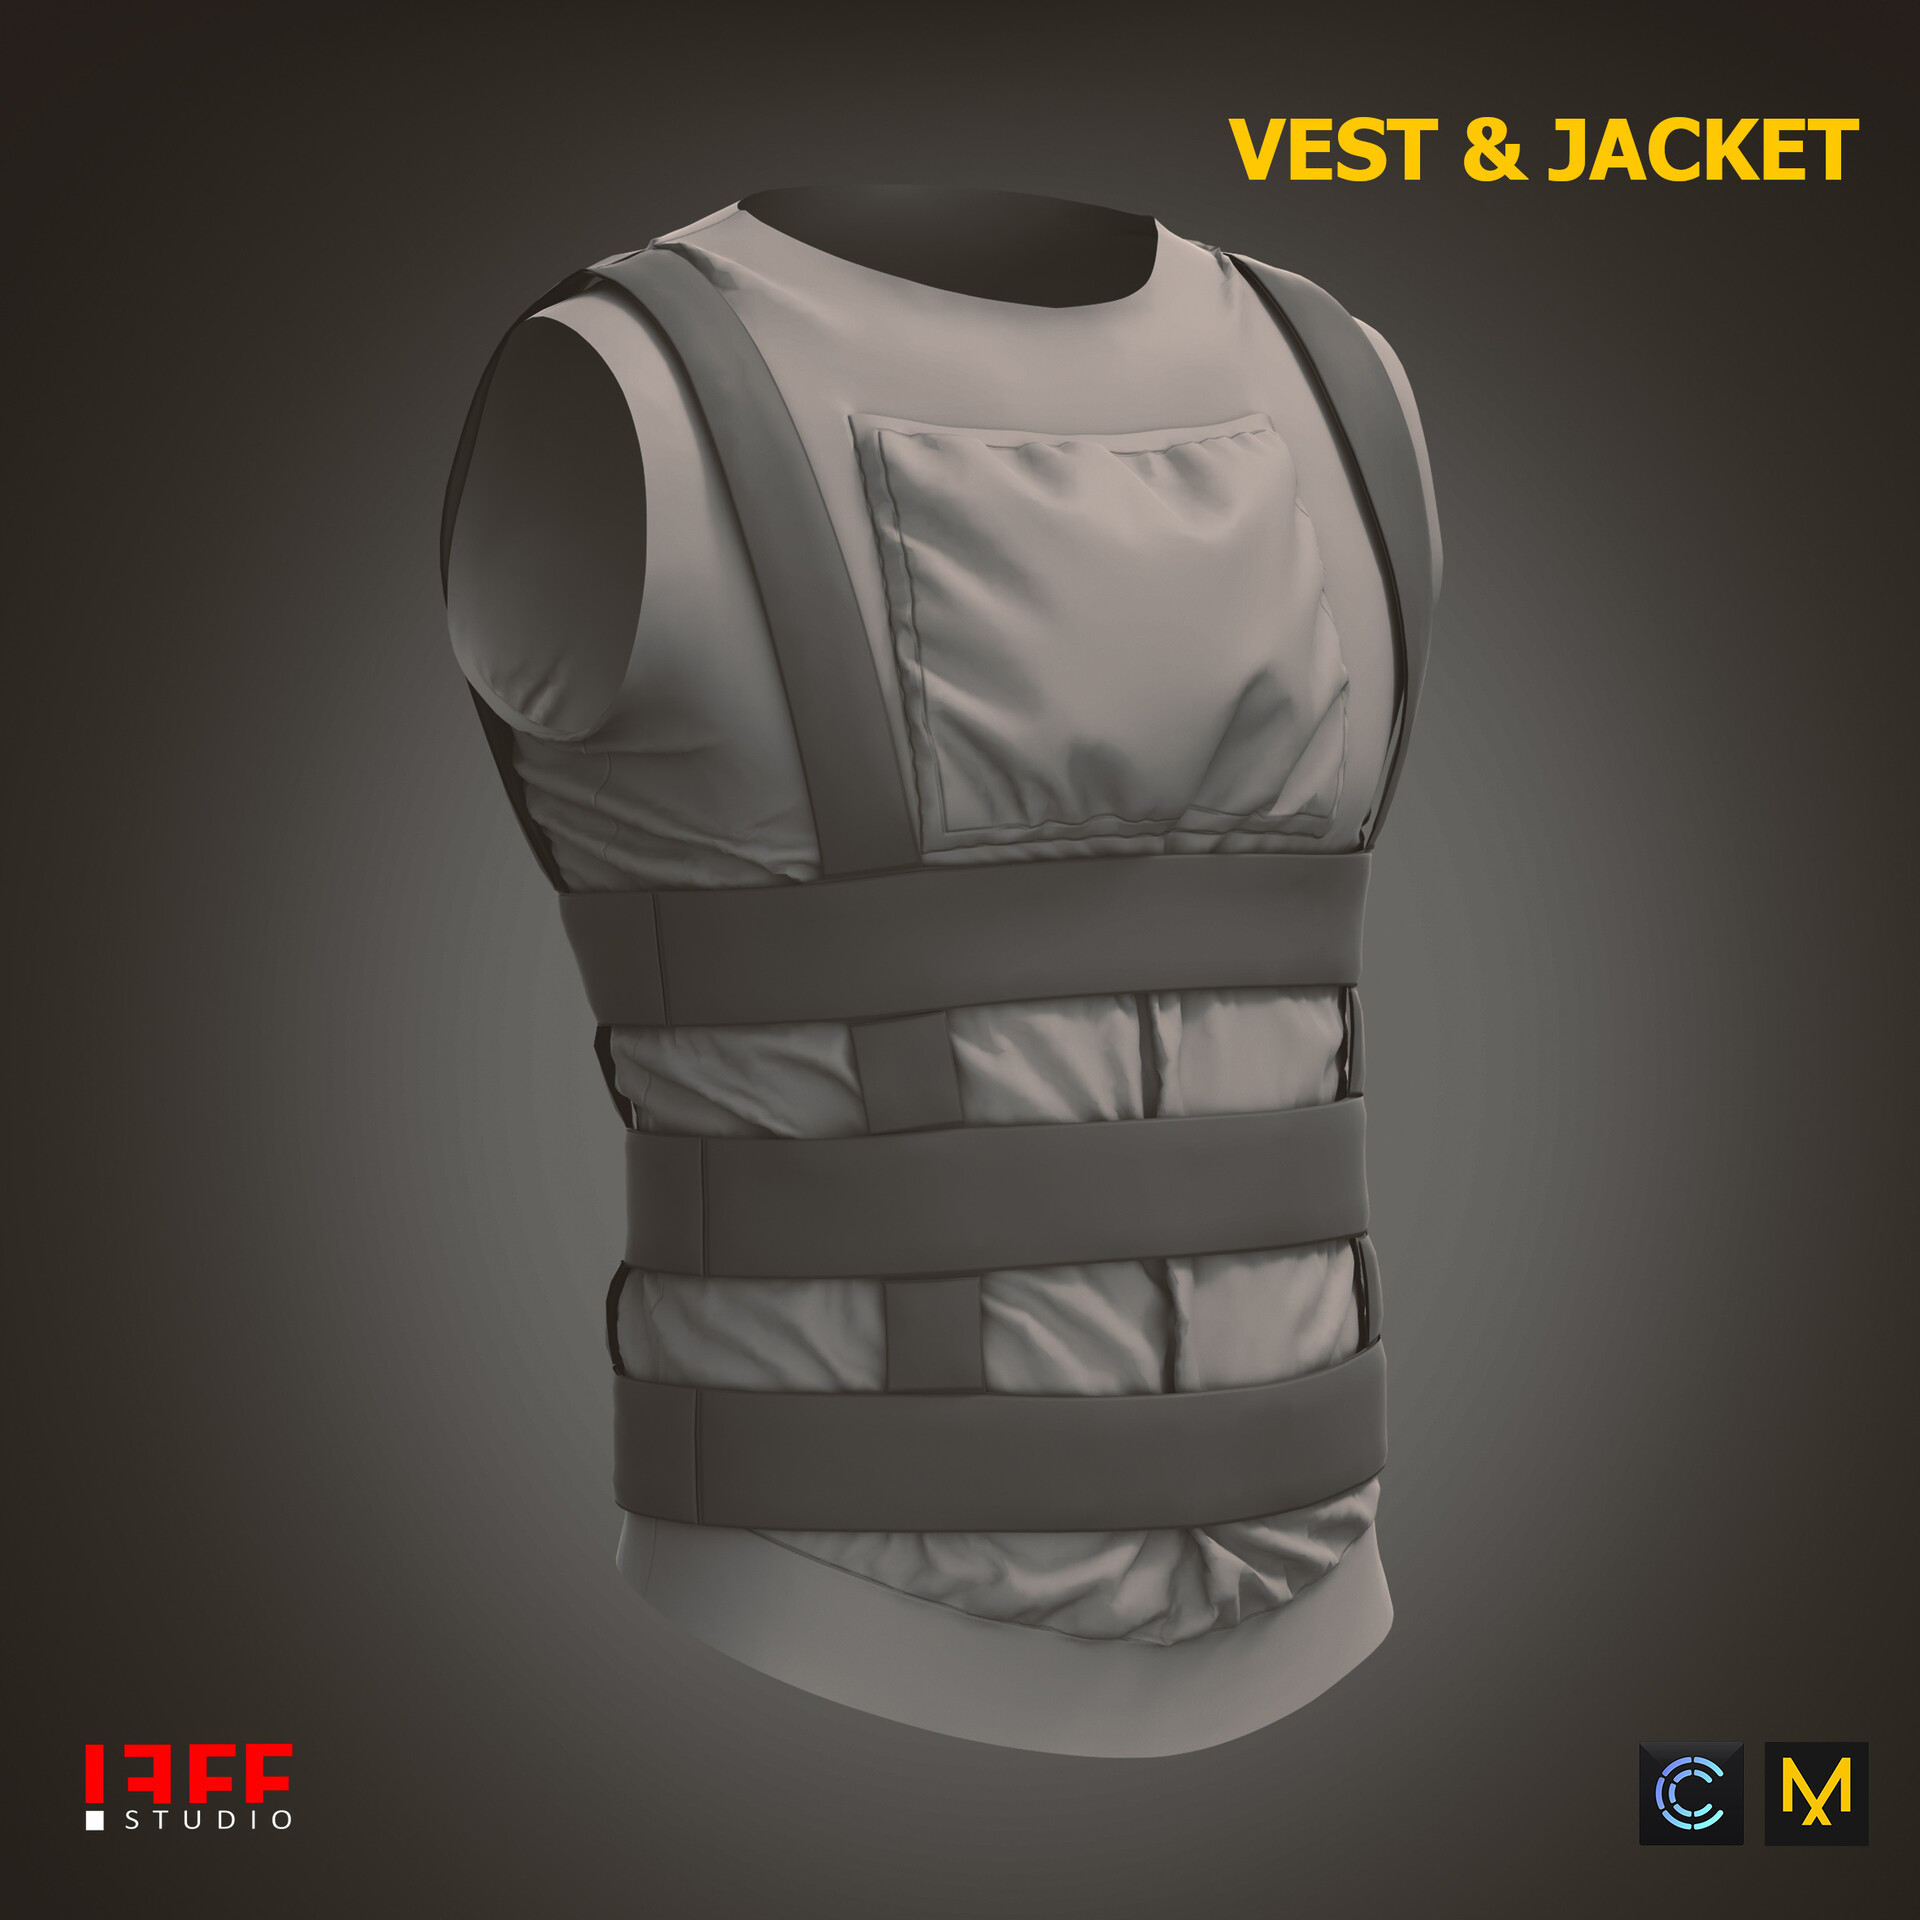 ArtStation - Body Armor Vest, Marvelous Designer